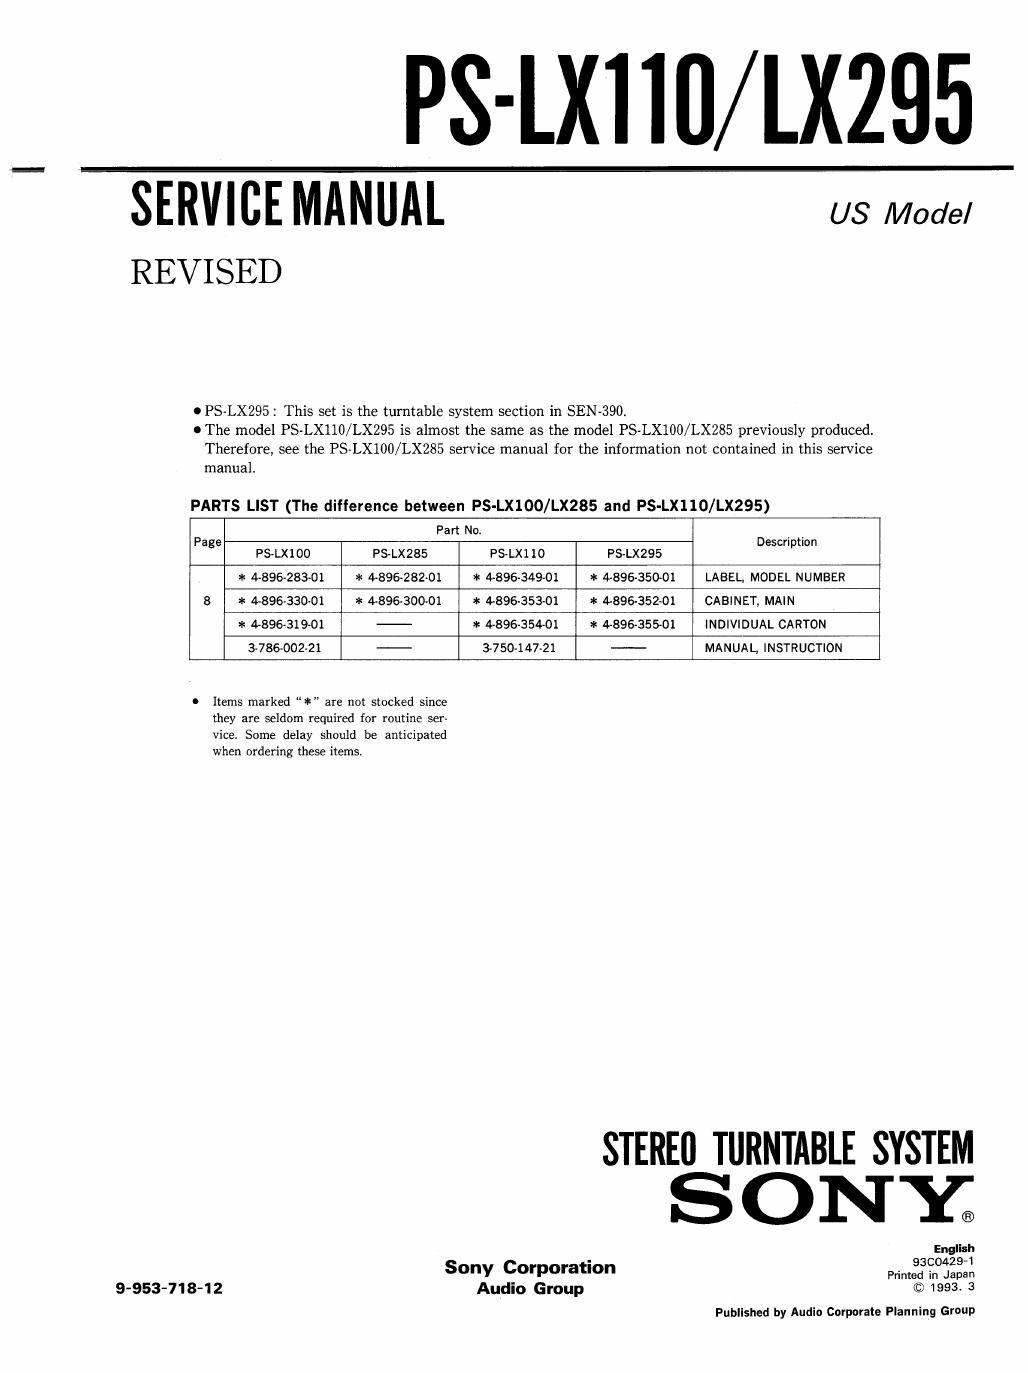 sony ps lx 295 service manual